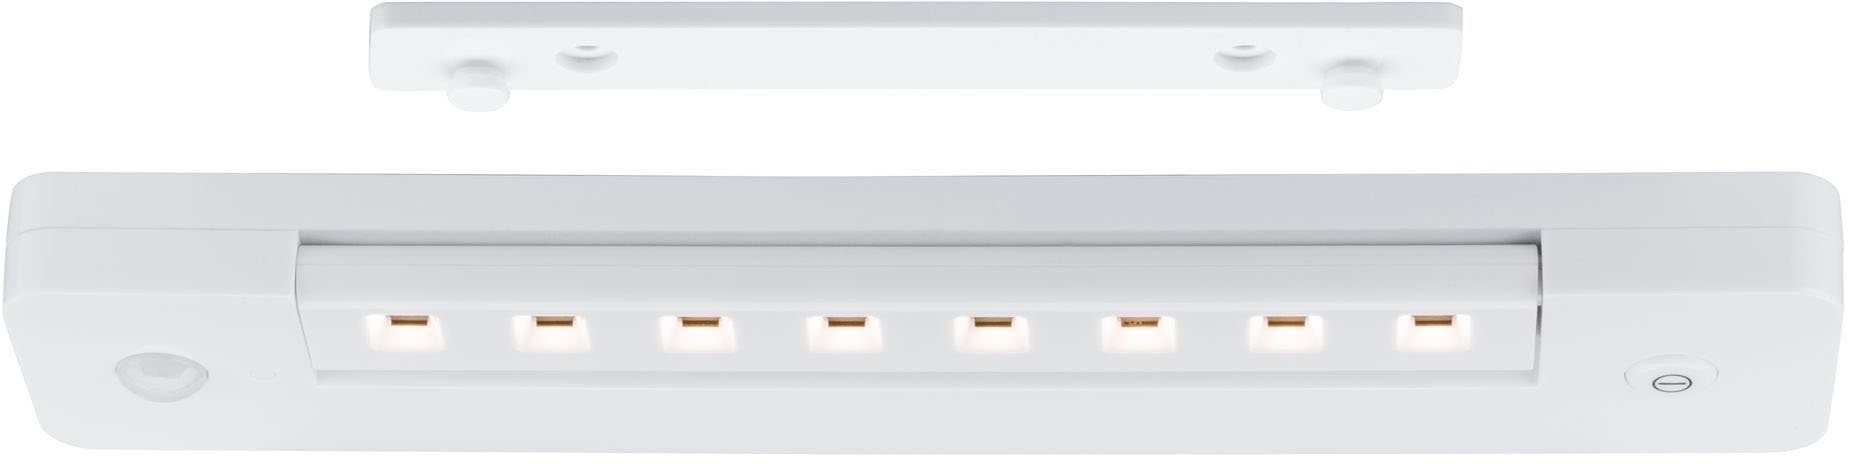 Lichtleiste, Schalter LED Warmweiß, fest LED An/Aus/Dimmen&Bewegungsmelder integriert, Paulmann LEDSmartLightbatteriebetrieben+